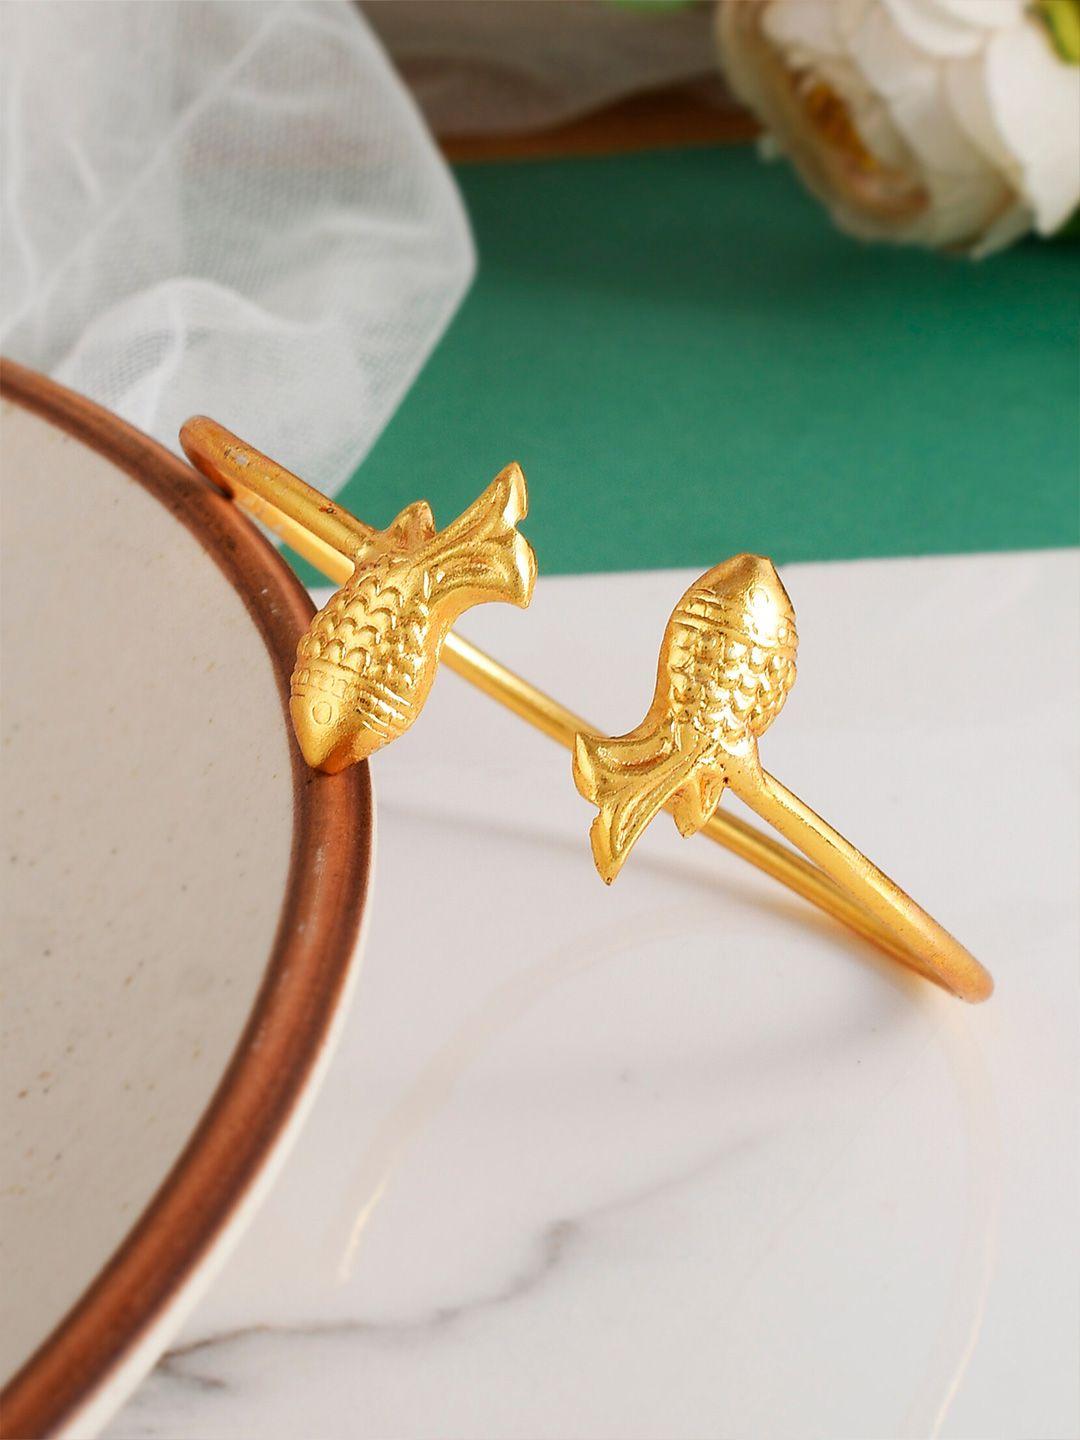 silvermerc designs women gold-plated kada bracelet